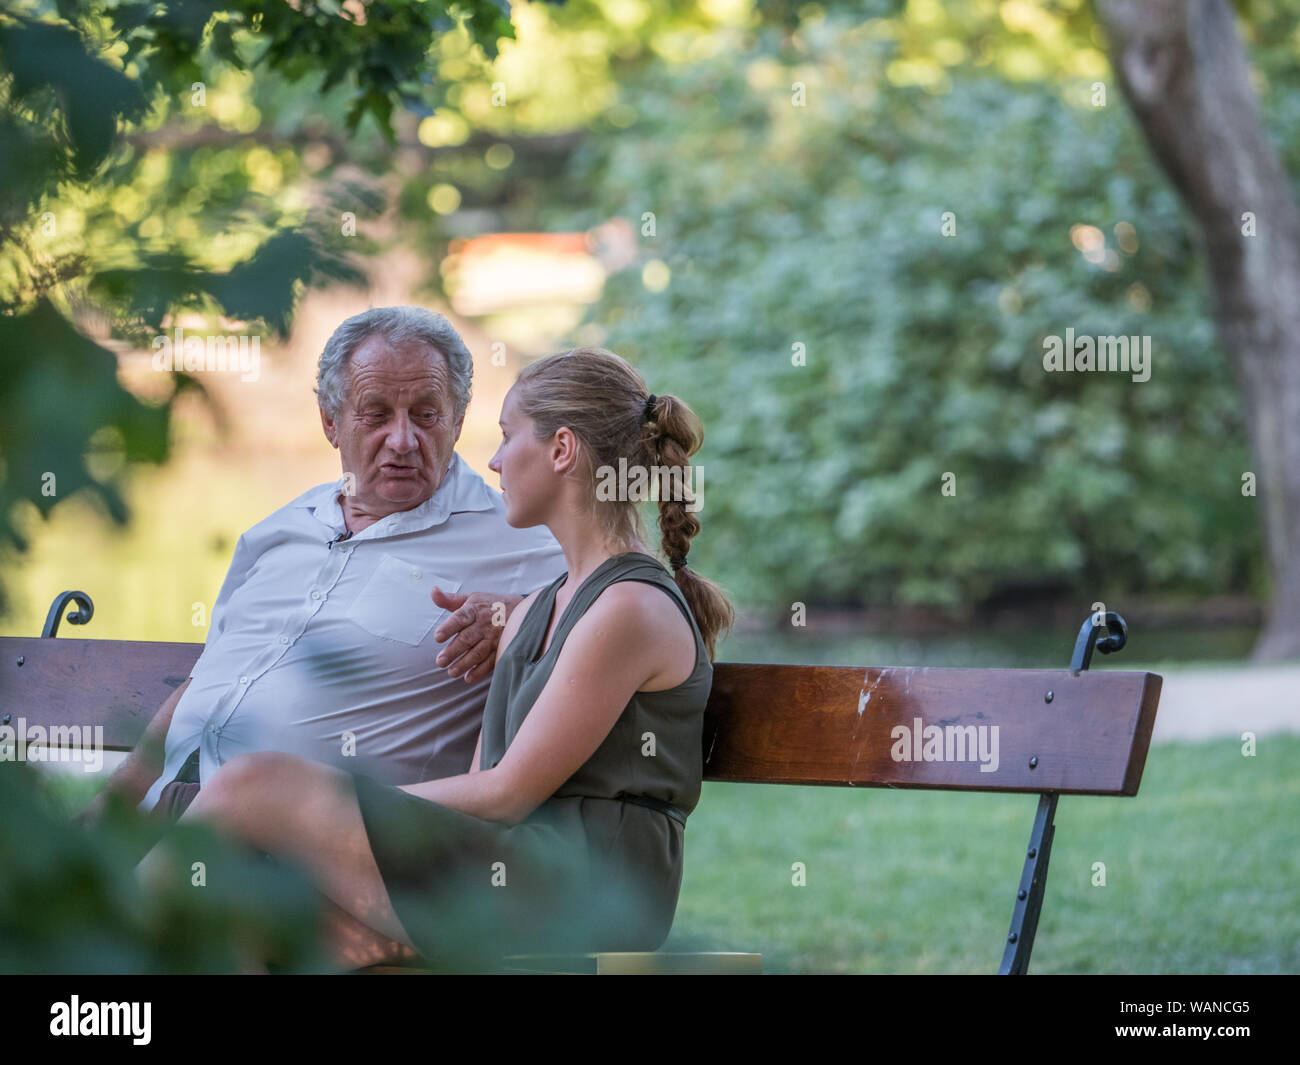 Grand-père et sa petite-fille sont en conversation et passer du temps ensemble. Ils sont assis sur le banc dans le parc. Concept intergénérationnel. Banque D'Images